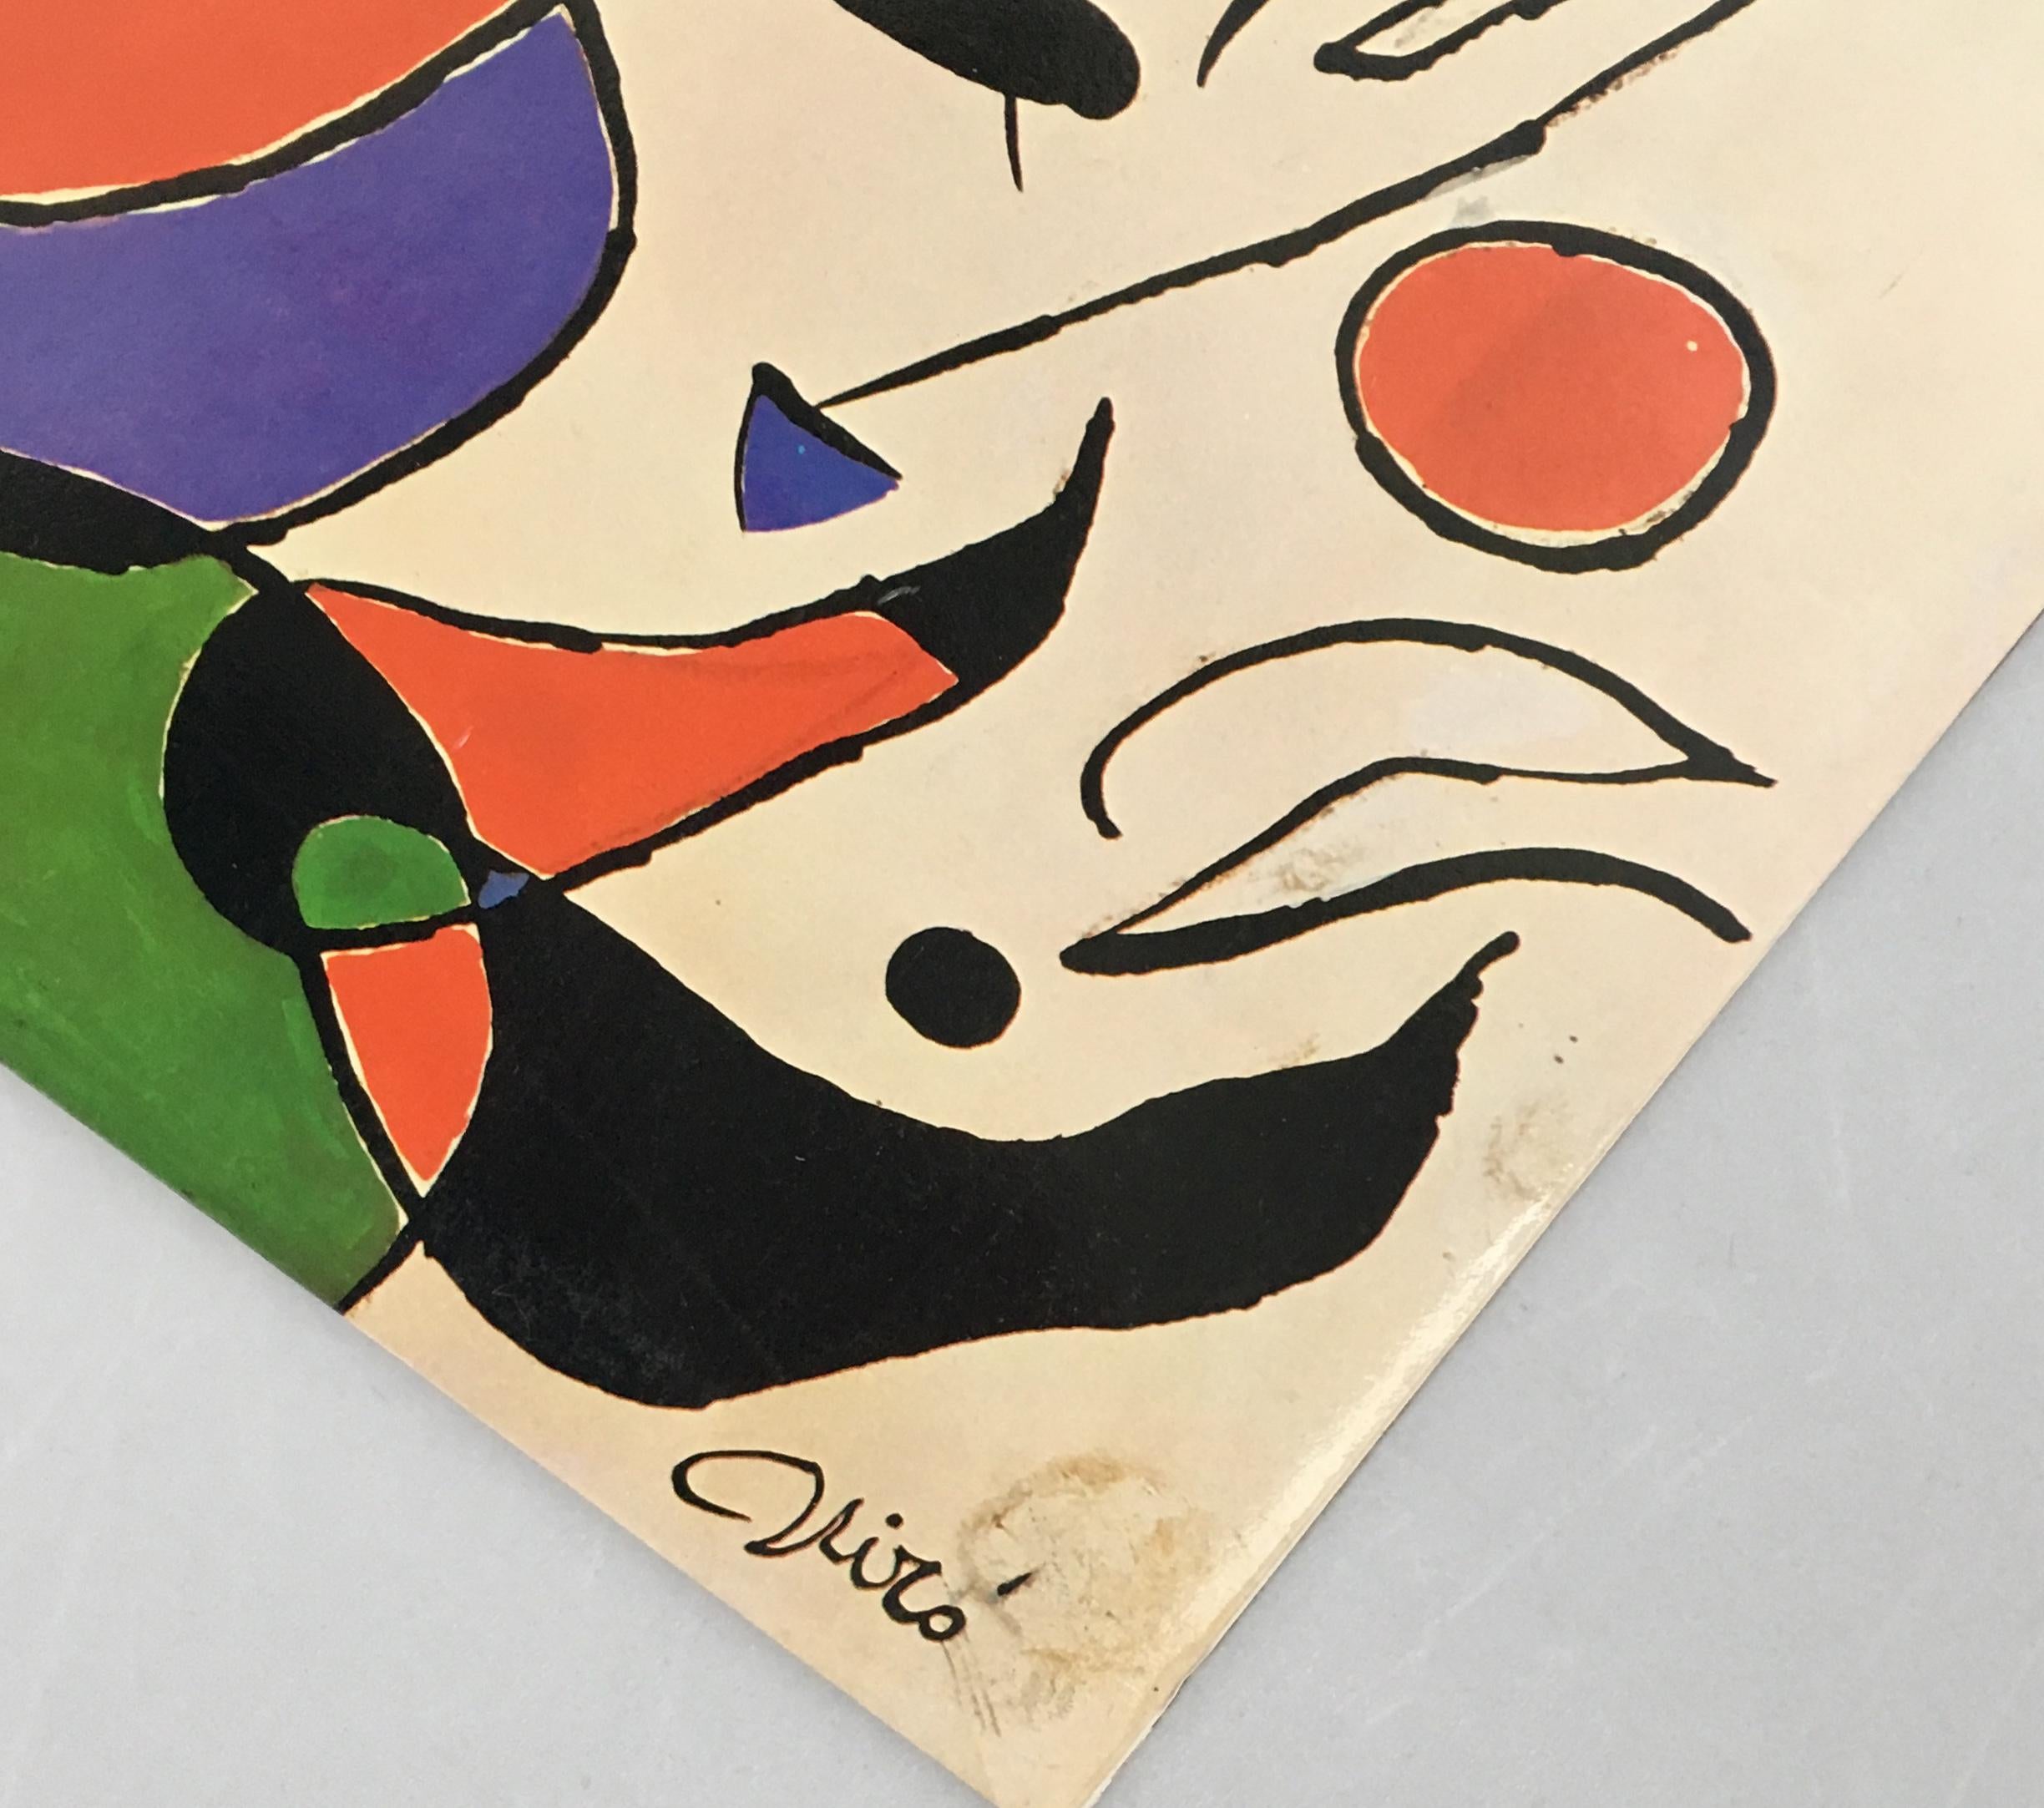 Joan Miró vinyl album art, 1979
Quan L’aigua Es Queixa, Raimon

Raimon and Joan Miró were close friends that first collaborated on the 1966 album Cançons de la roda del temps. In 1979, Miró designed a cover for the album Quan la aigua queixa,